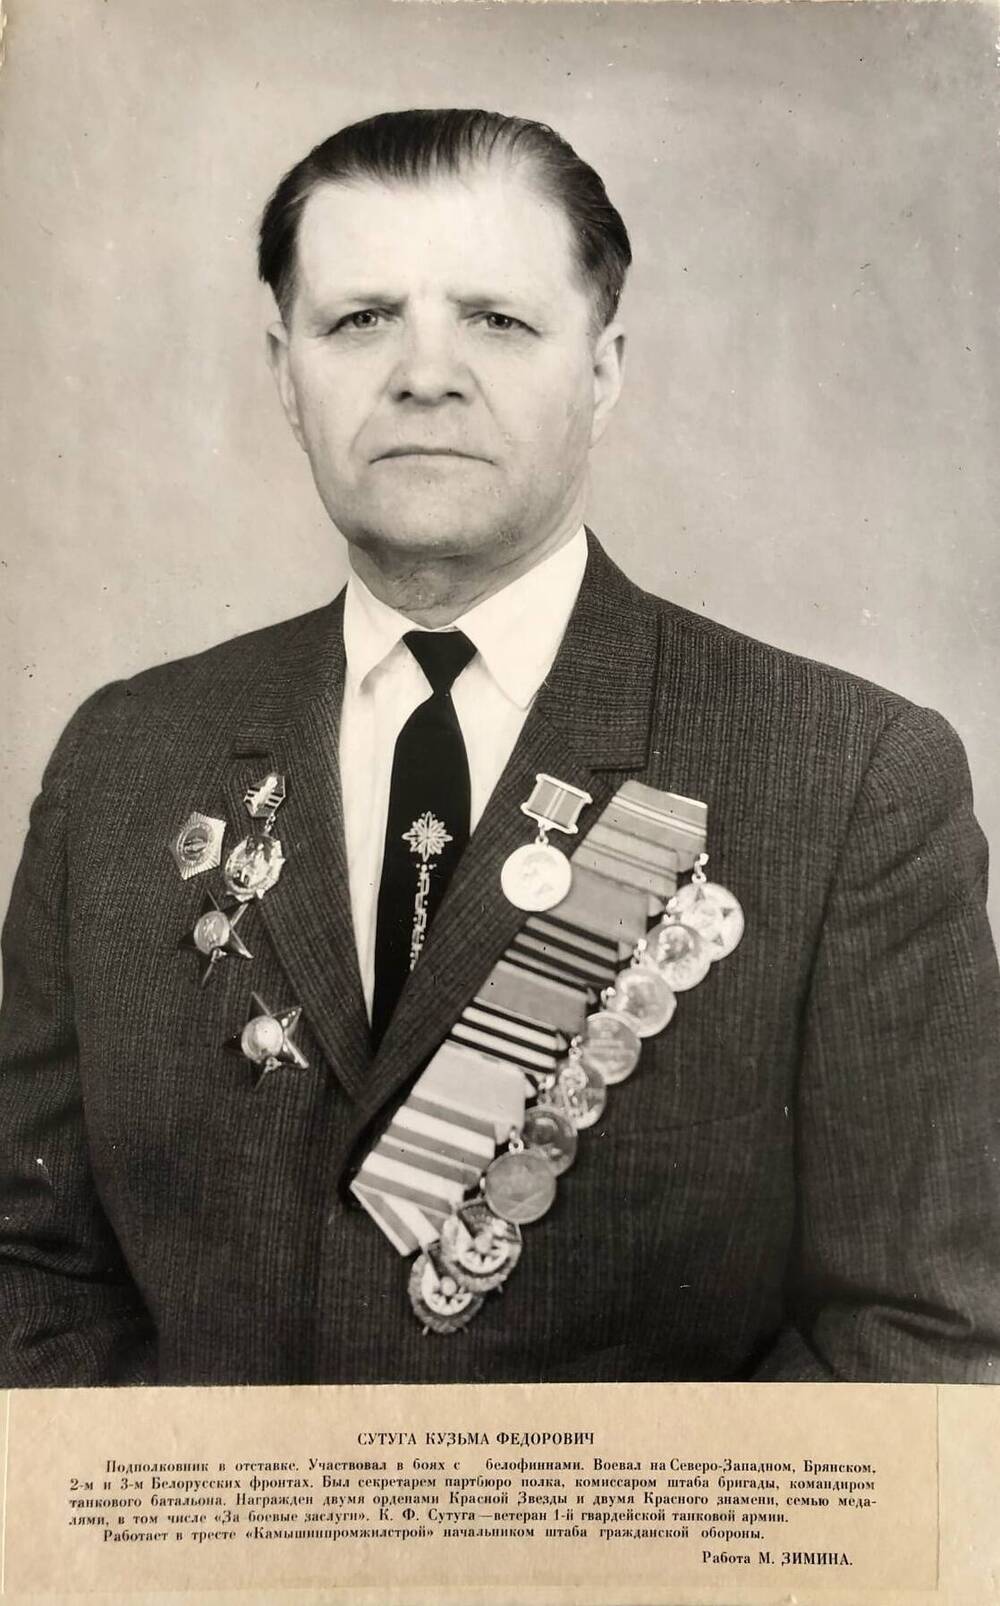 Фотография Сутуга Кузьмы Федоровича, участника Великой Отечественной войны 1941-1945 гг.